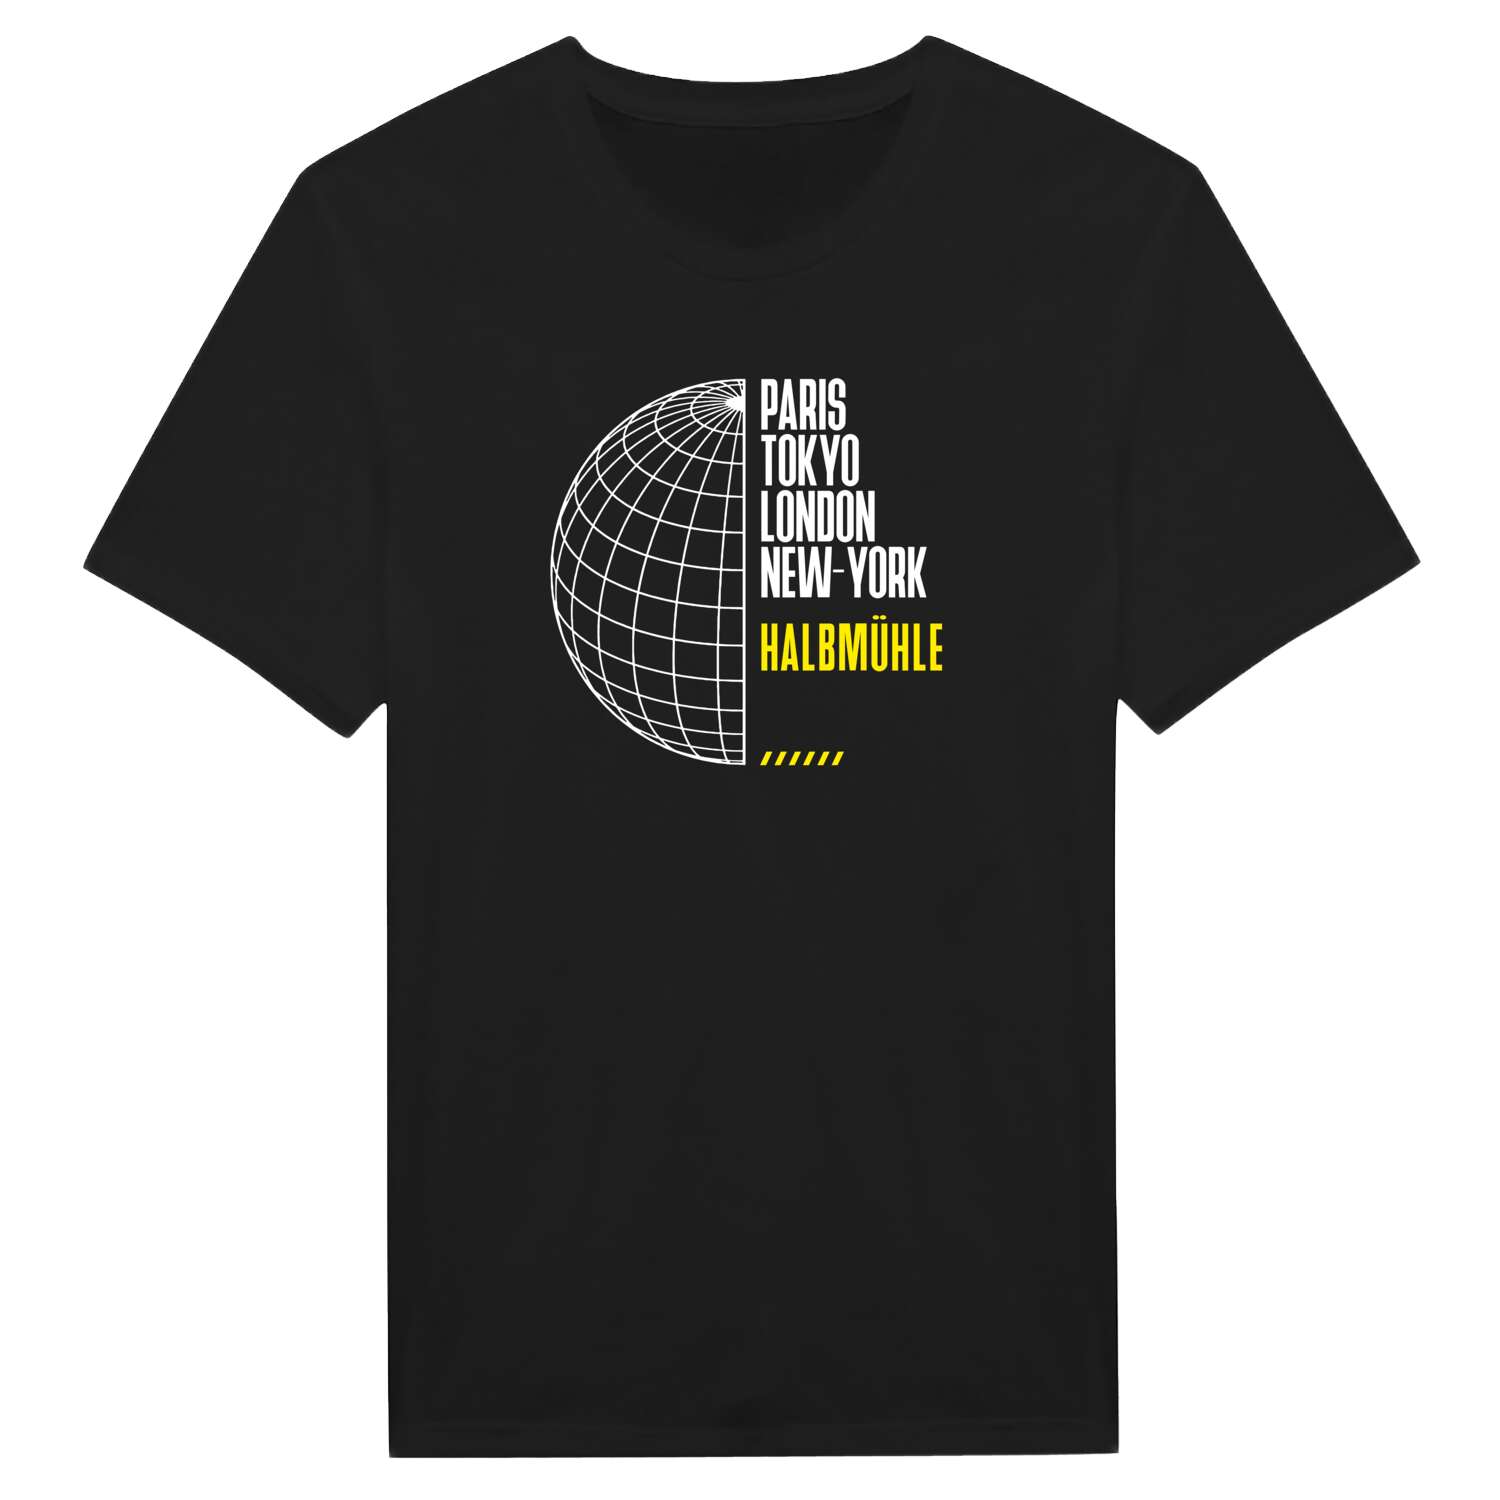 Halbmühle T-Shirt »Paris Tokyo London«